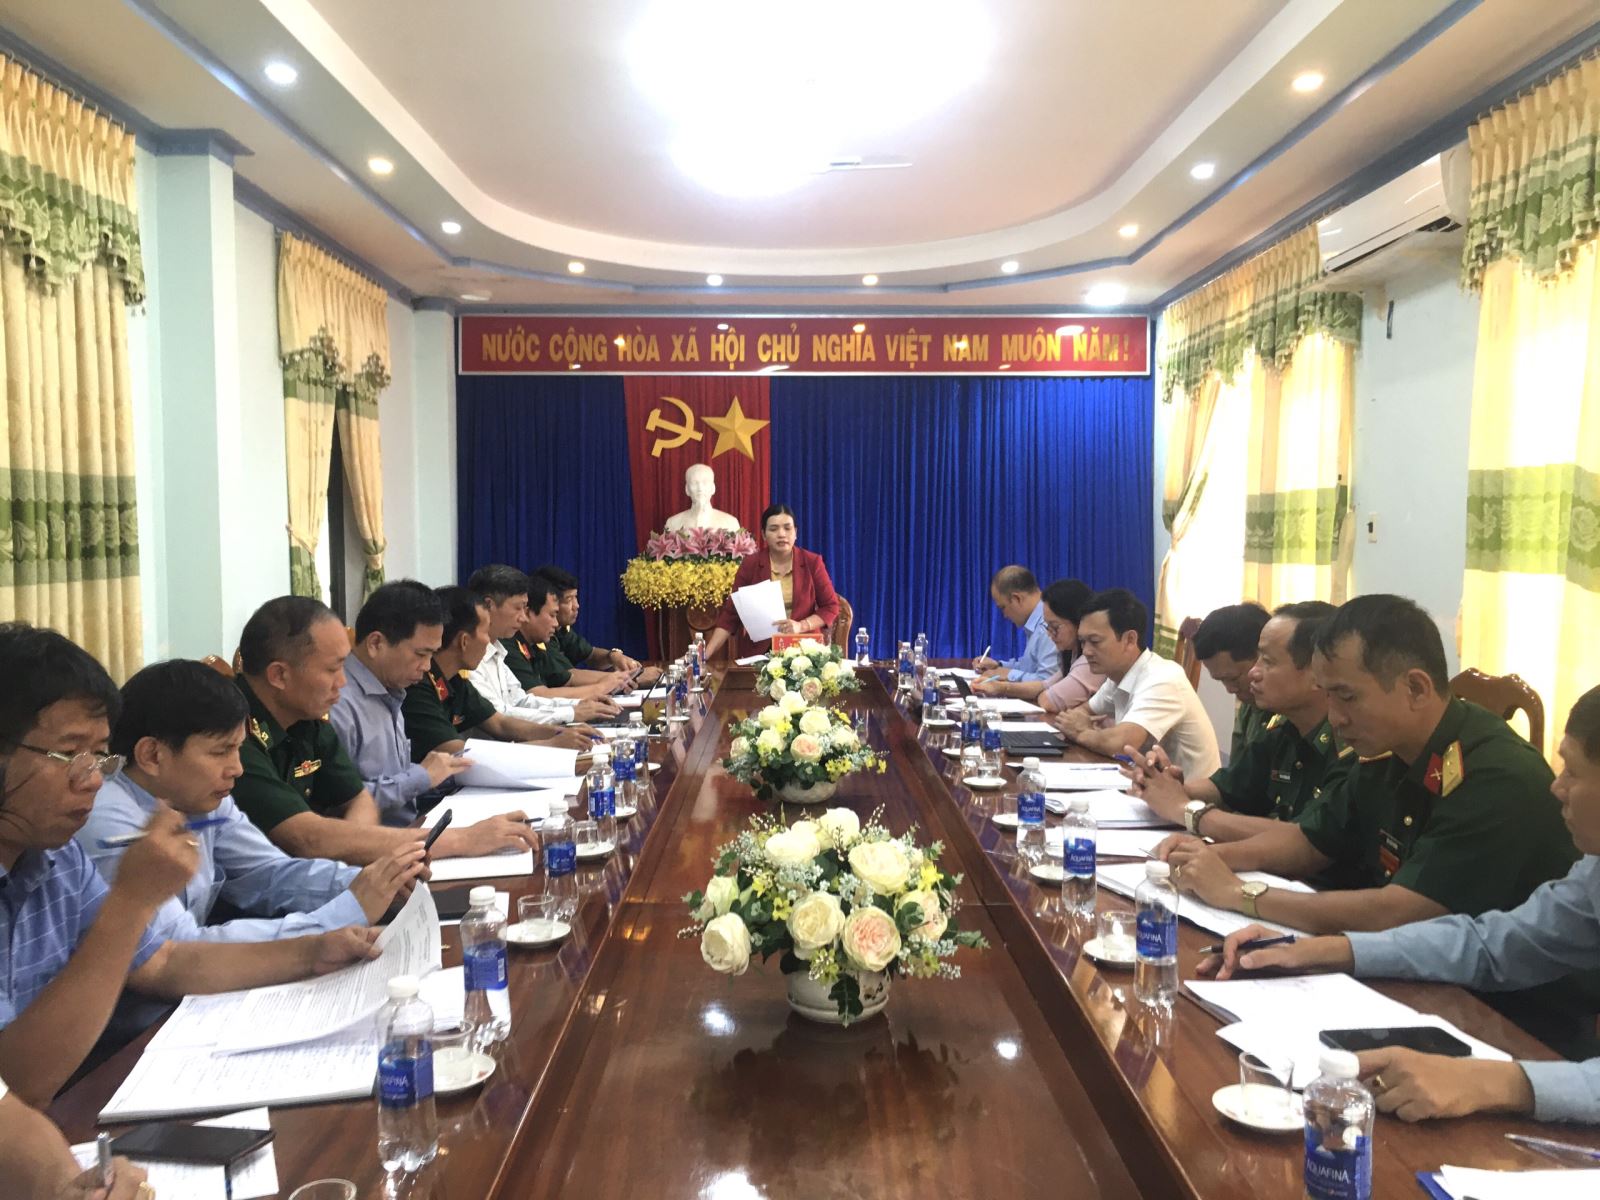 Đồng chí Y Ngọc - Phó Chủ tịch UBND tỉnh kiểm tra chuẩn bị các hoạt động tổ chức Chương trình giao lưu Bộ quốc phòng 3 nước Việt Nam - Lào - Campuchia